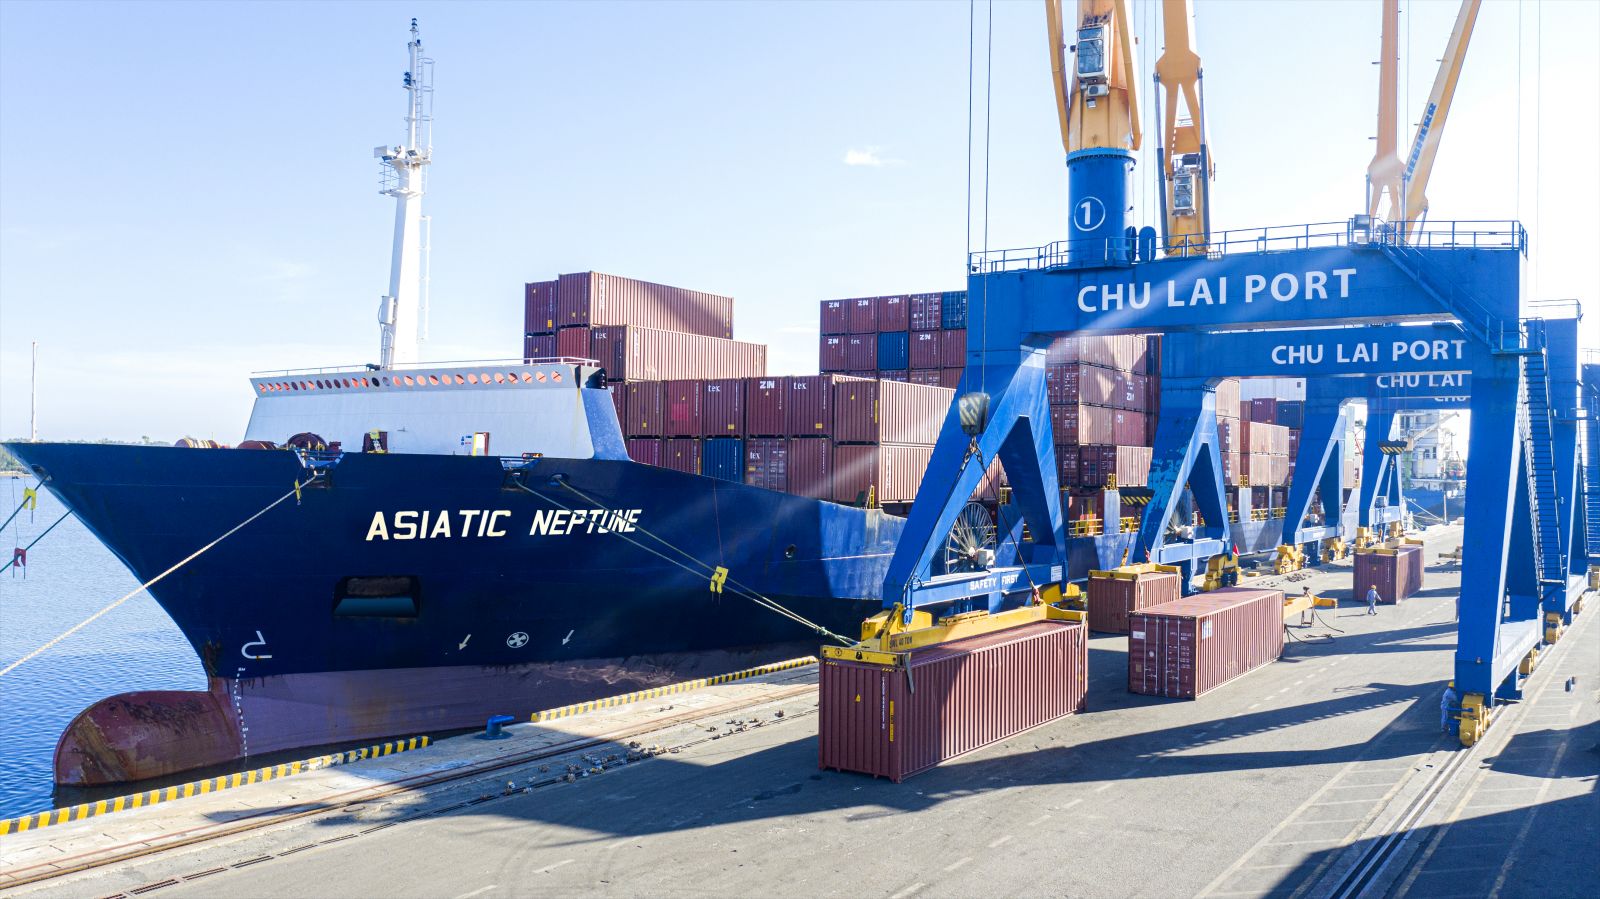 Tàu Asiatic Neptune cập cảng Chu Lai đầu năm mới 2021